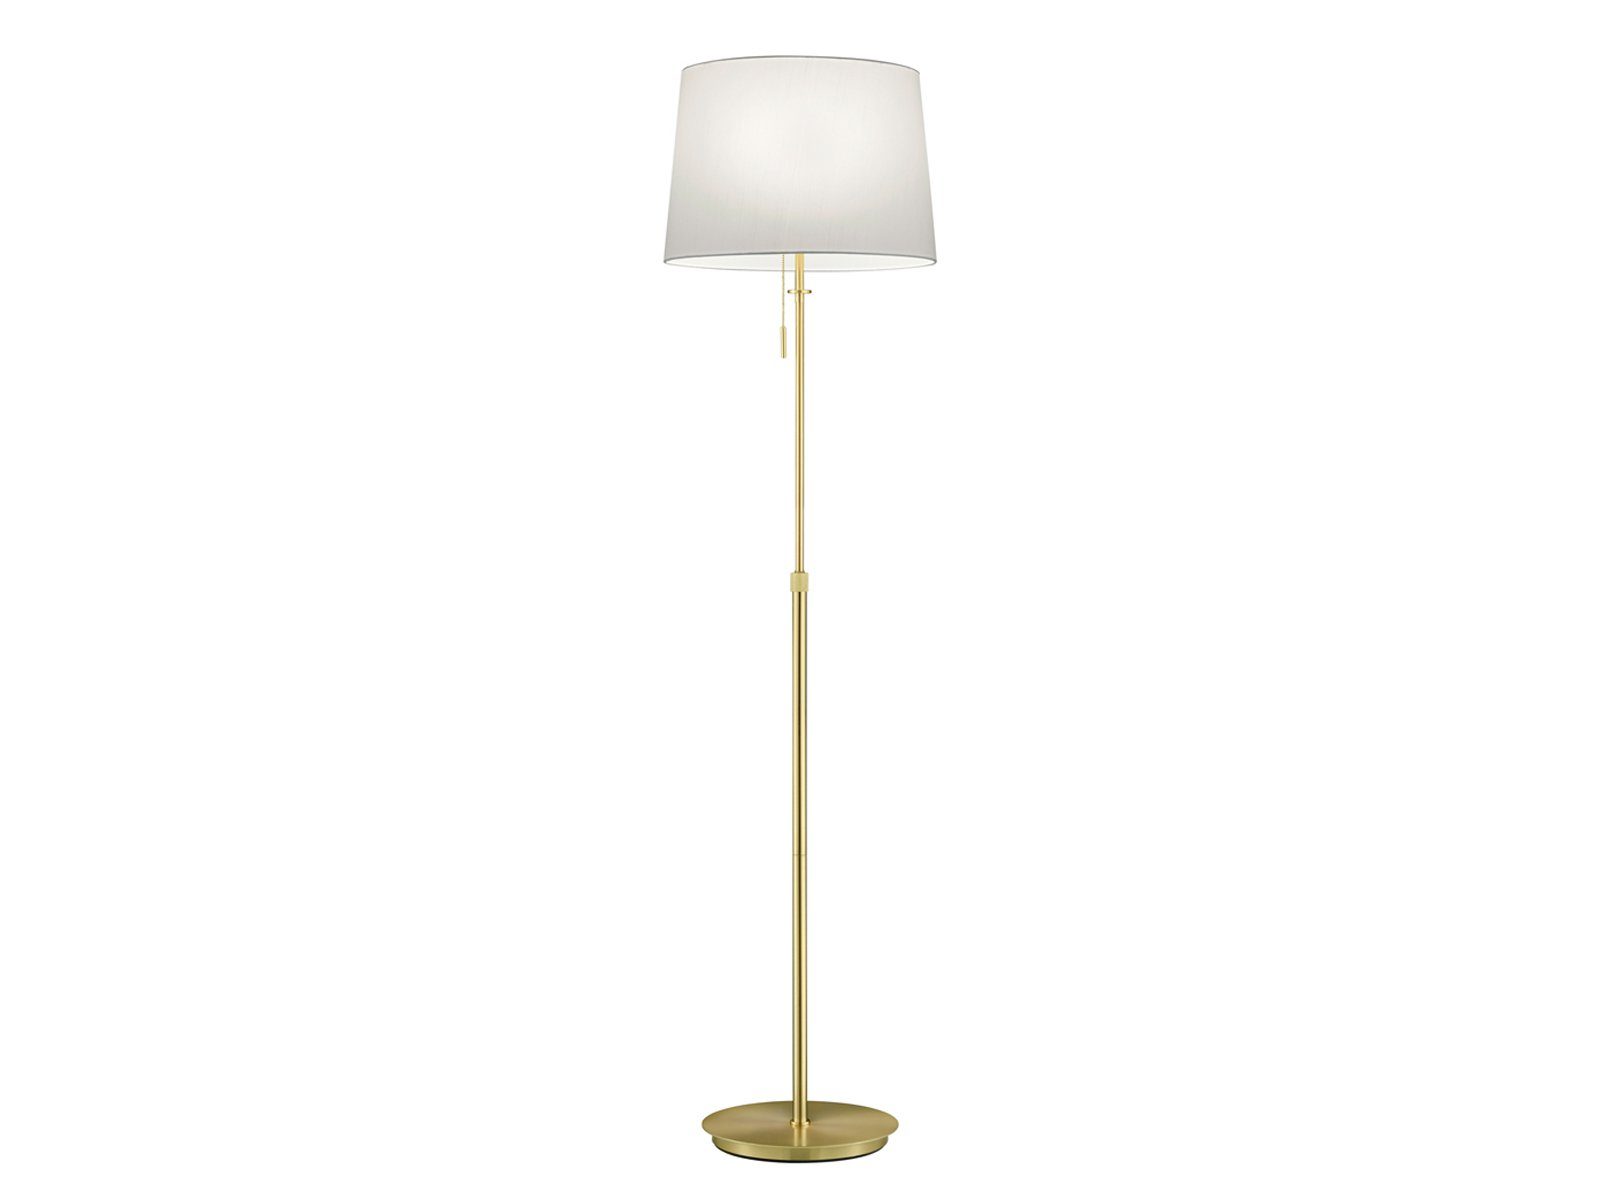 H Lampenschirm meineWunschleuchte Stoff Designklassiker Warmweiß, Messing wechselbar, golden LED Stehlampe, höhenverstellbar 138-180cm LED